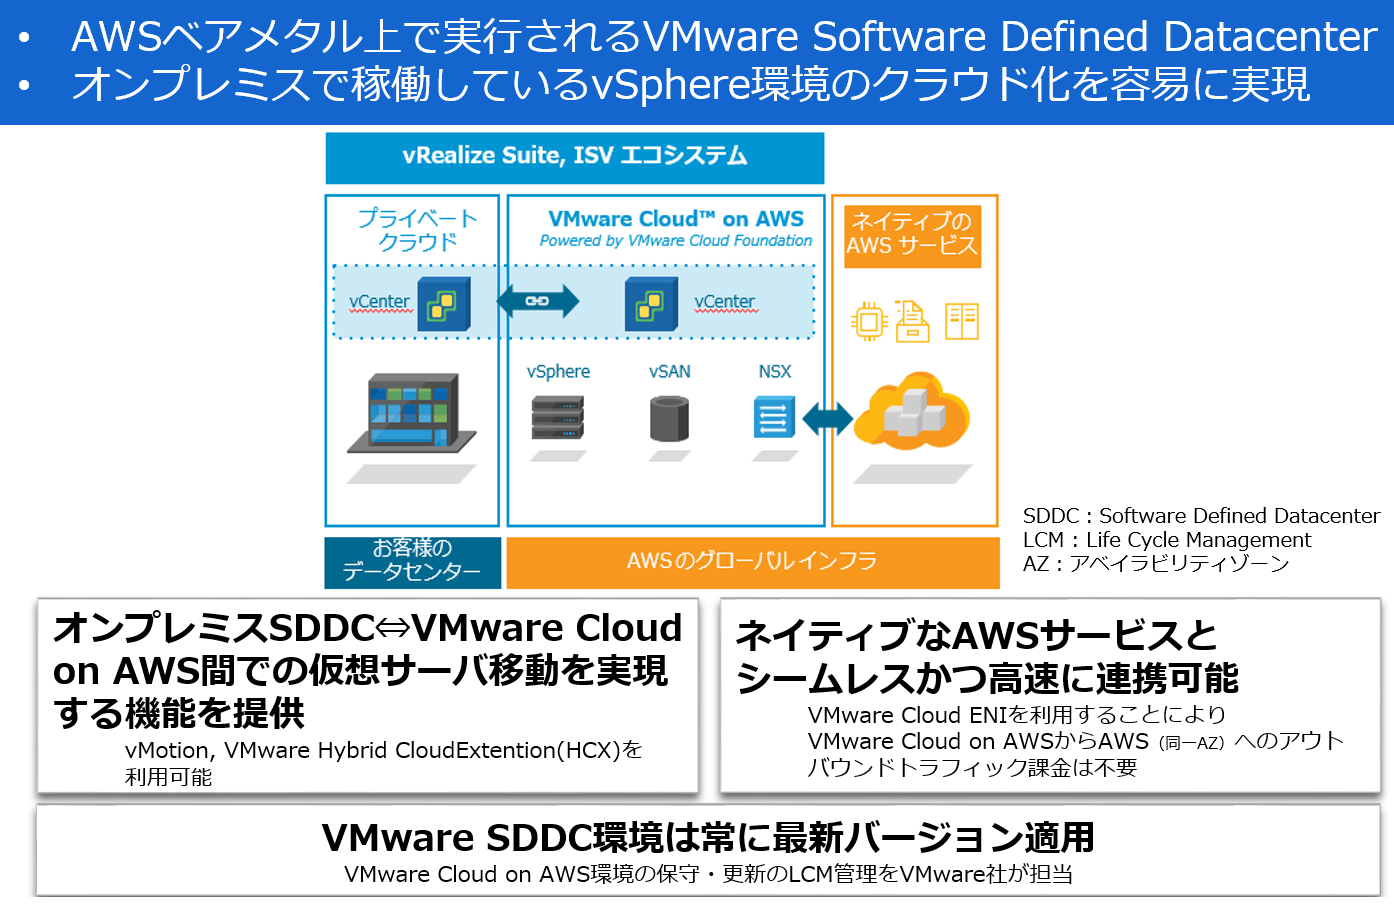 VMware Cloud on AWSƂ́ioTFNECj